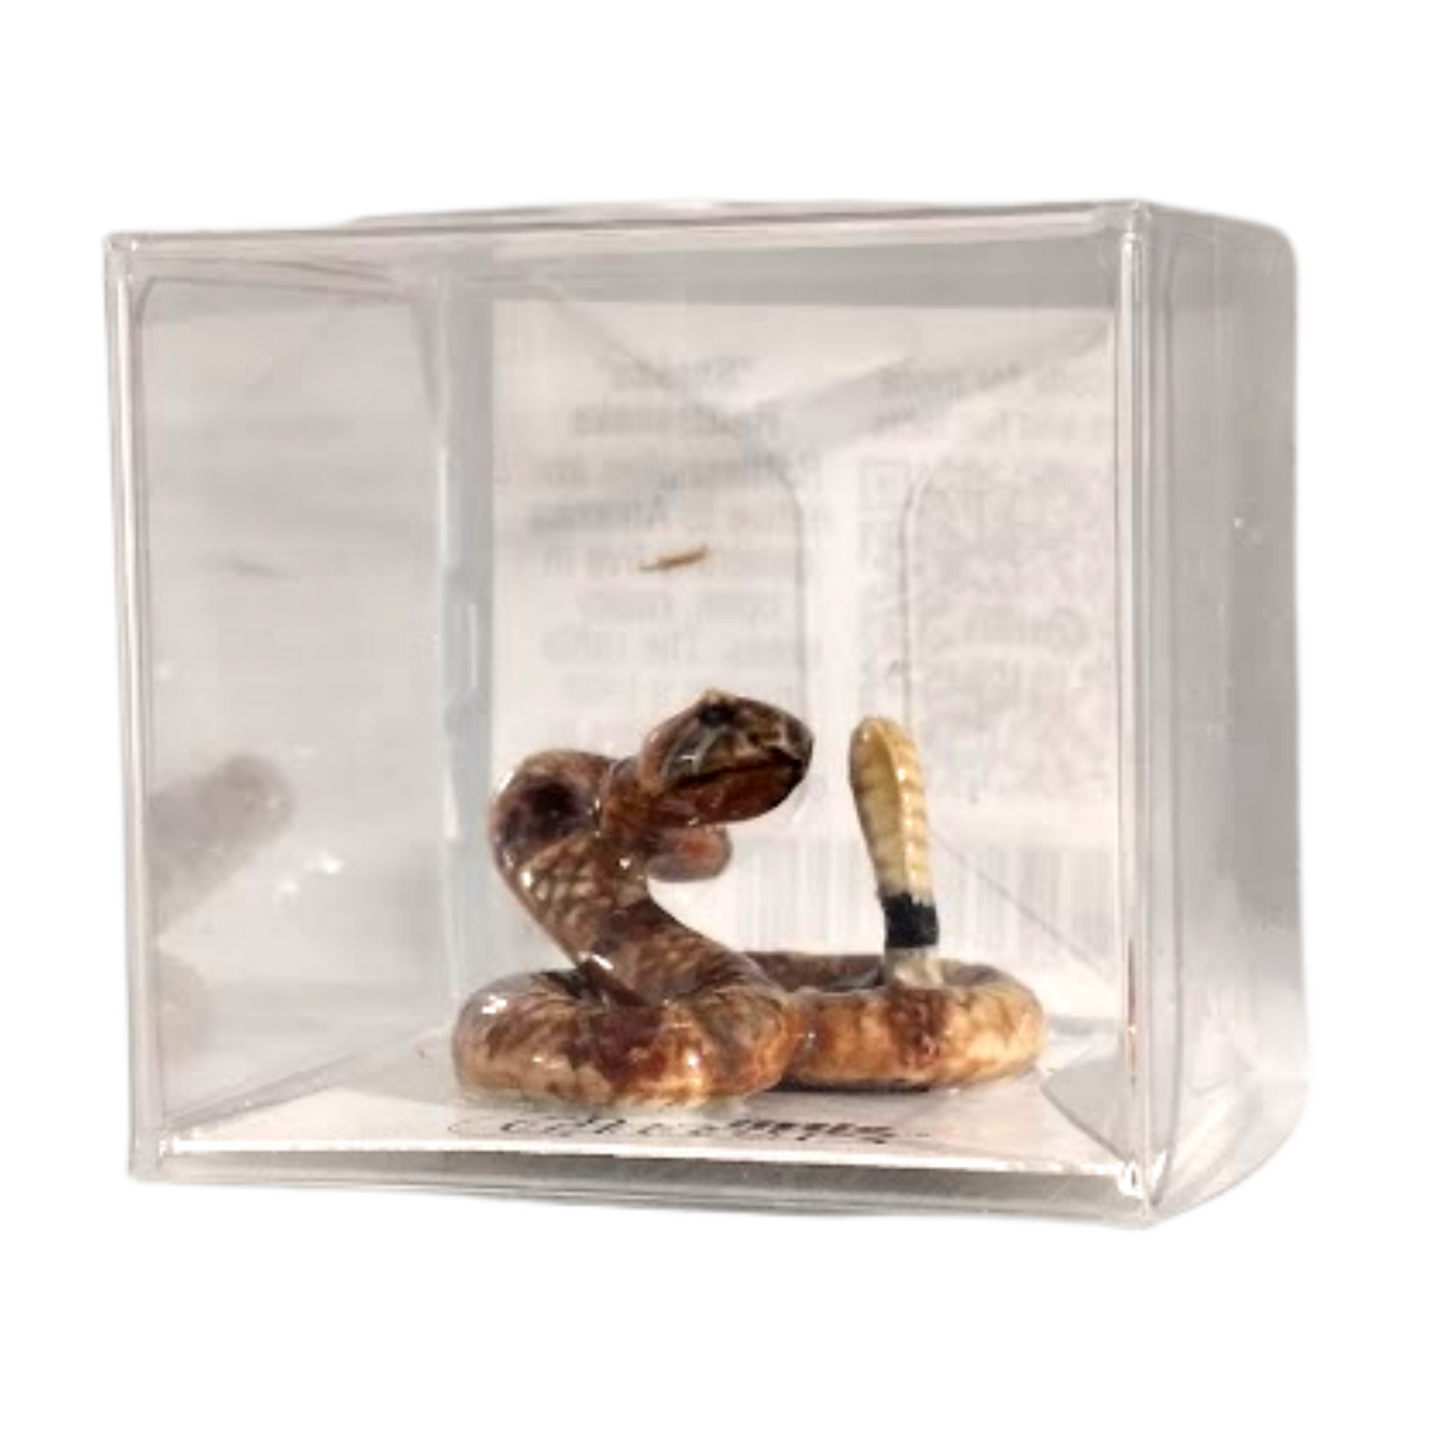 "Shakes" Rattlesnake Miniature Figurine